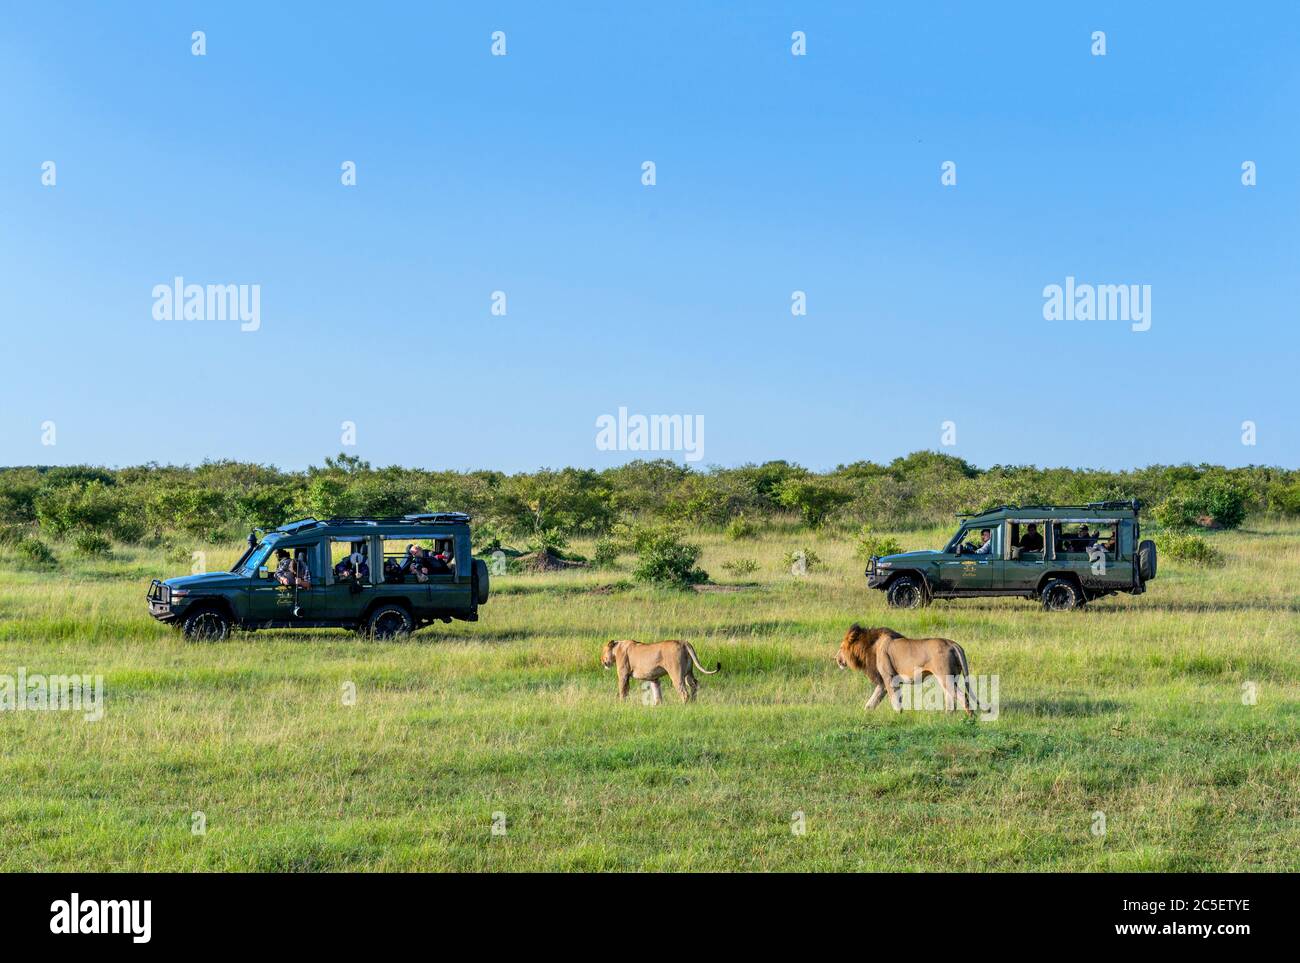 Lion (Panthera leo). Lion und Löwin, die vor Touristen in Safarifahrzeugen spazieren, Masai Mara National Reserve, Kenia, Afrika Stockfoto